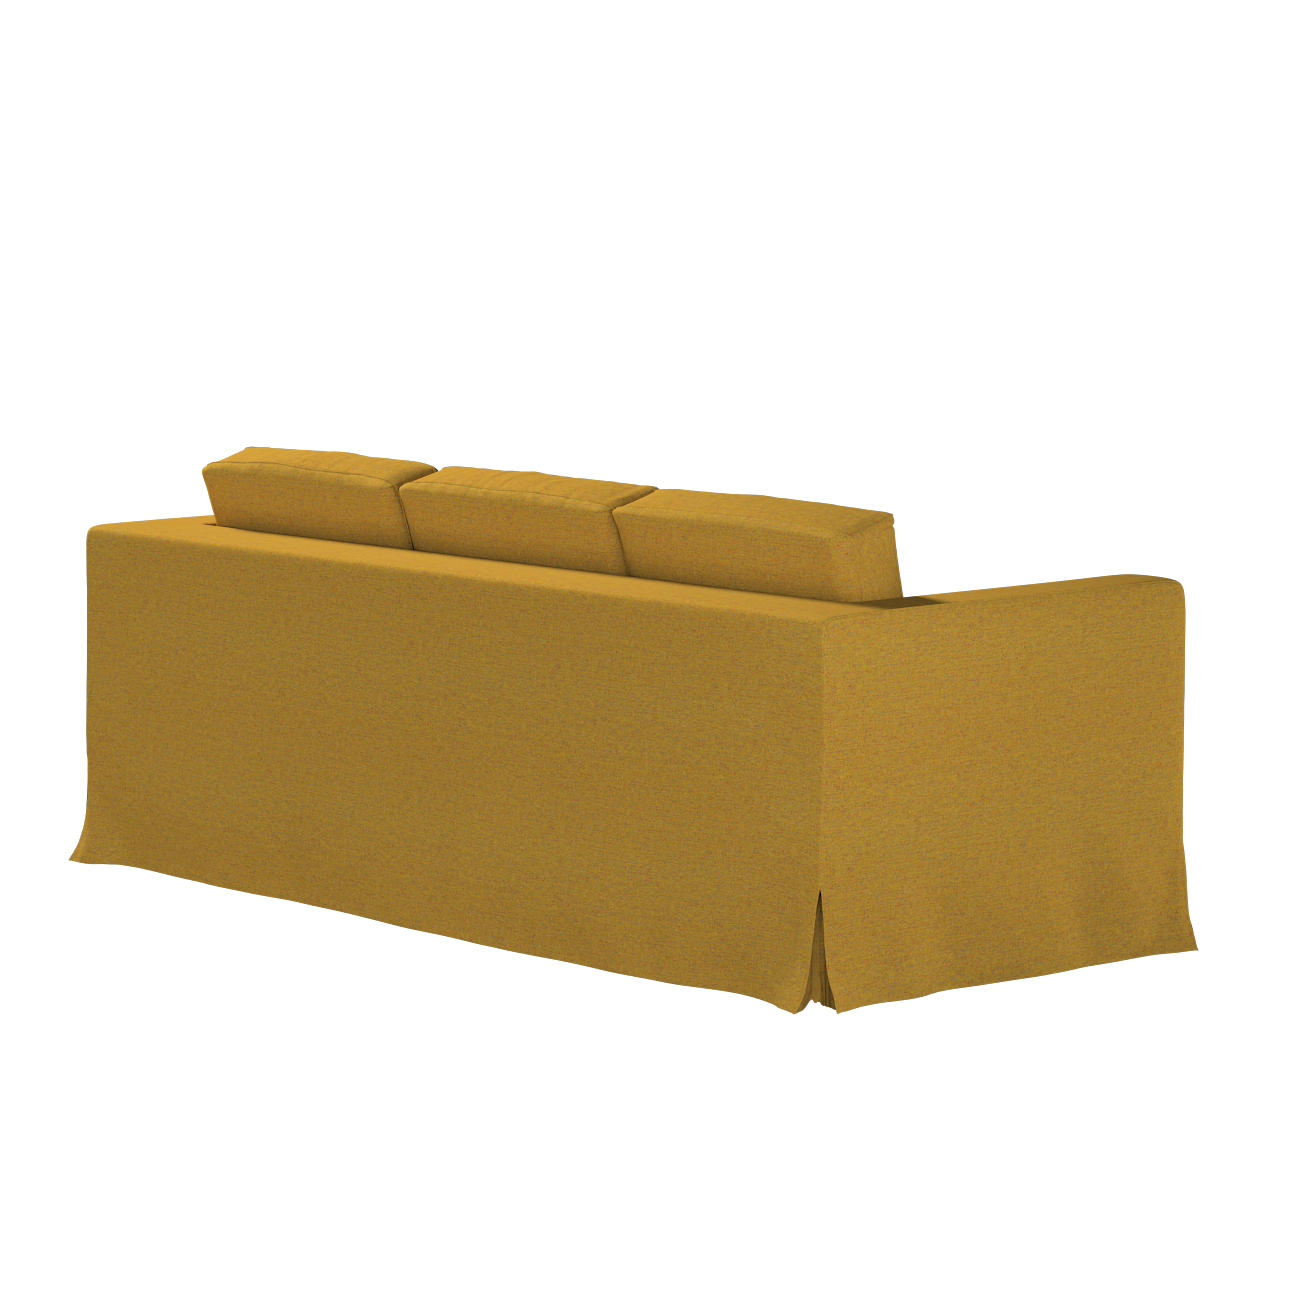 Bezug für Karlanda 3-Sitzer Sofa nicht ausklappbar, lang, gelb, Bezug für S günstig online kaufen